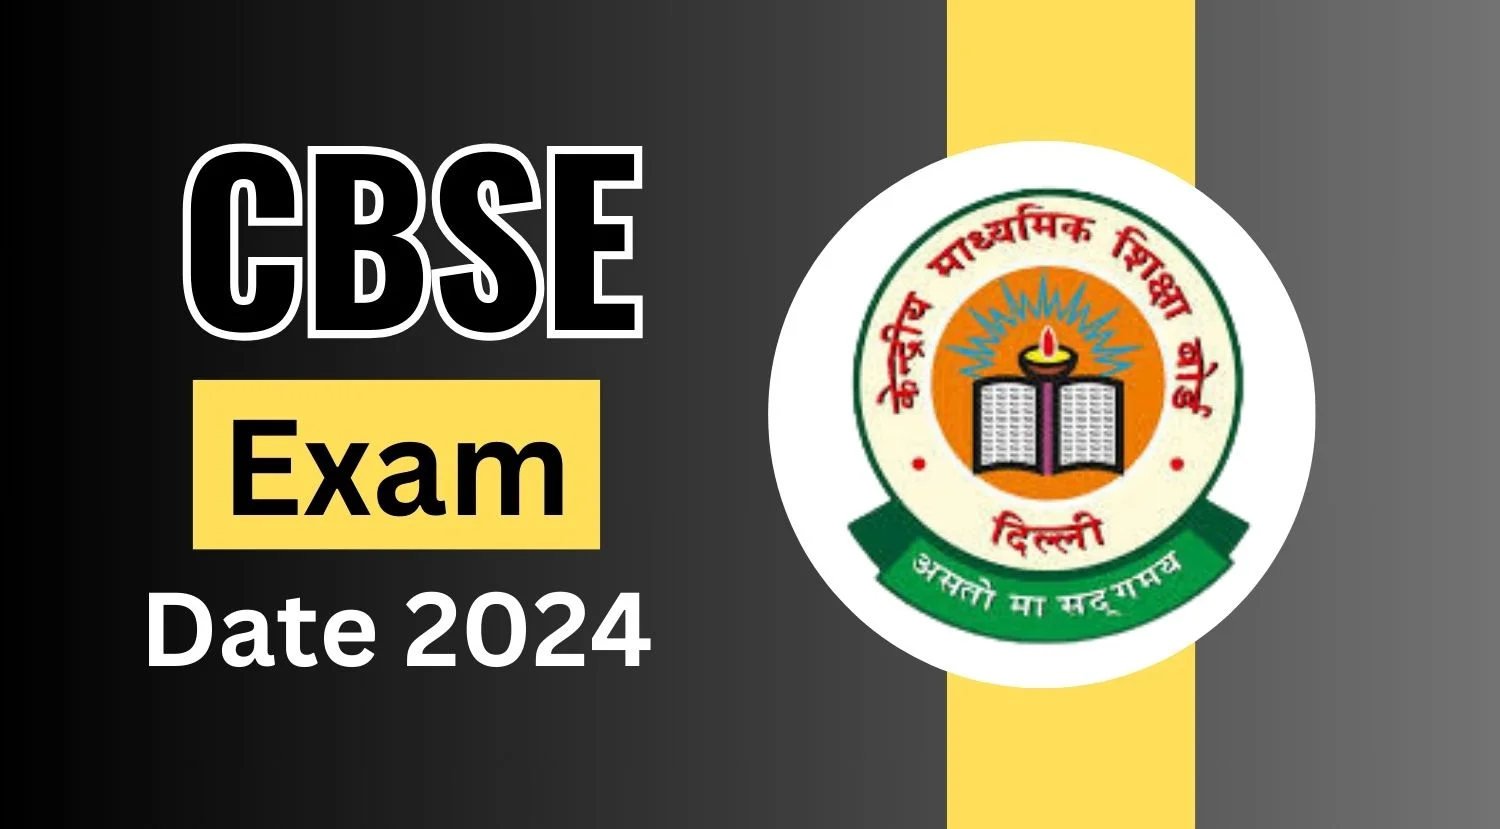 CBSE Exam Date 2024